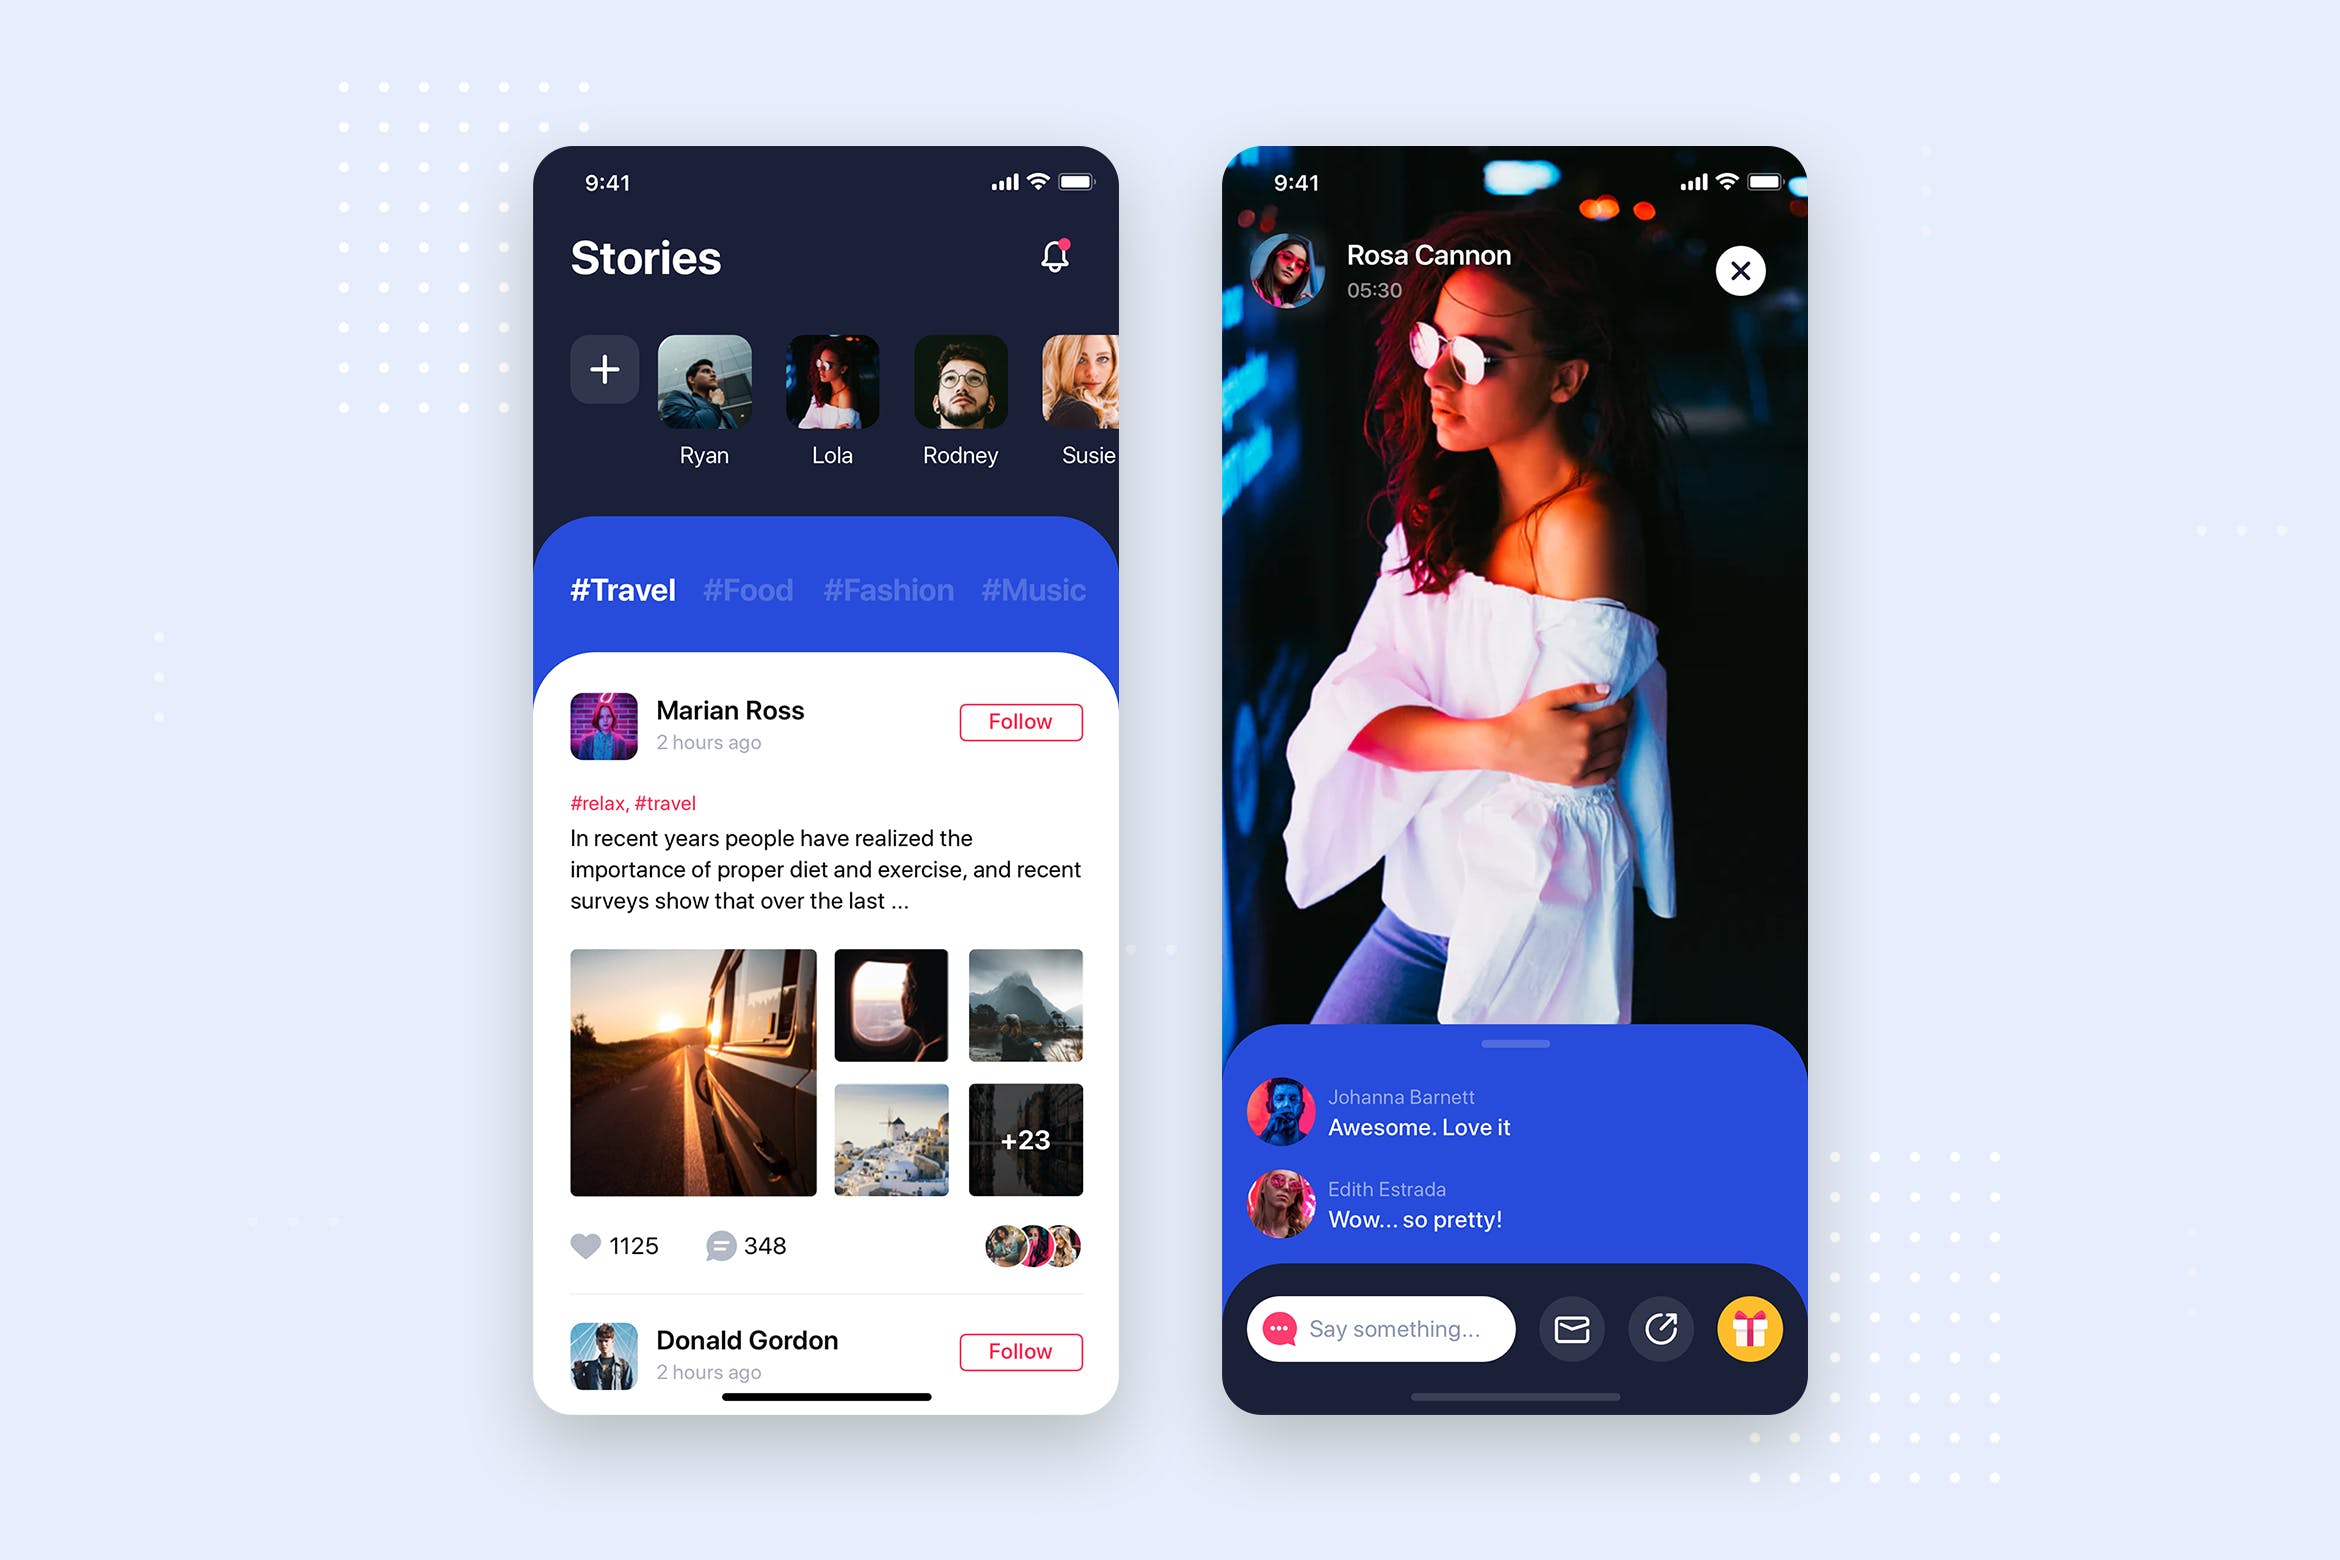 社交APP应用频道列表&详情界面设计第一素材精选模板 Social Stories Mobile App UI Kit Template插图